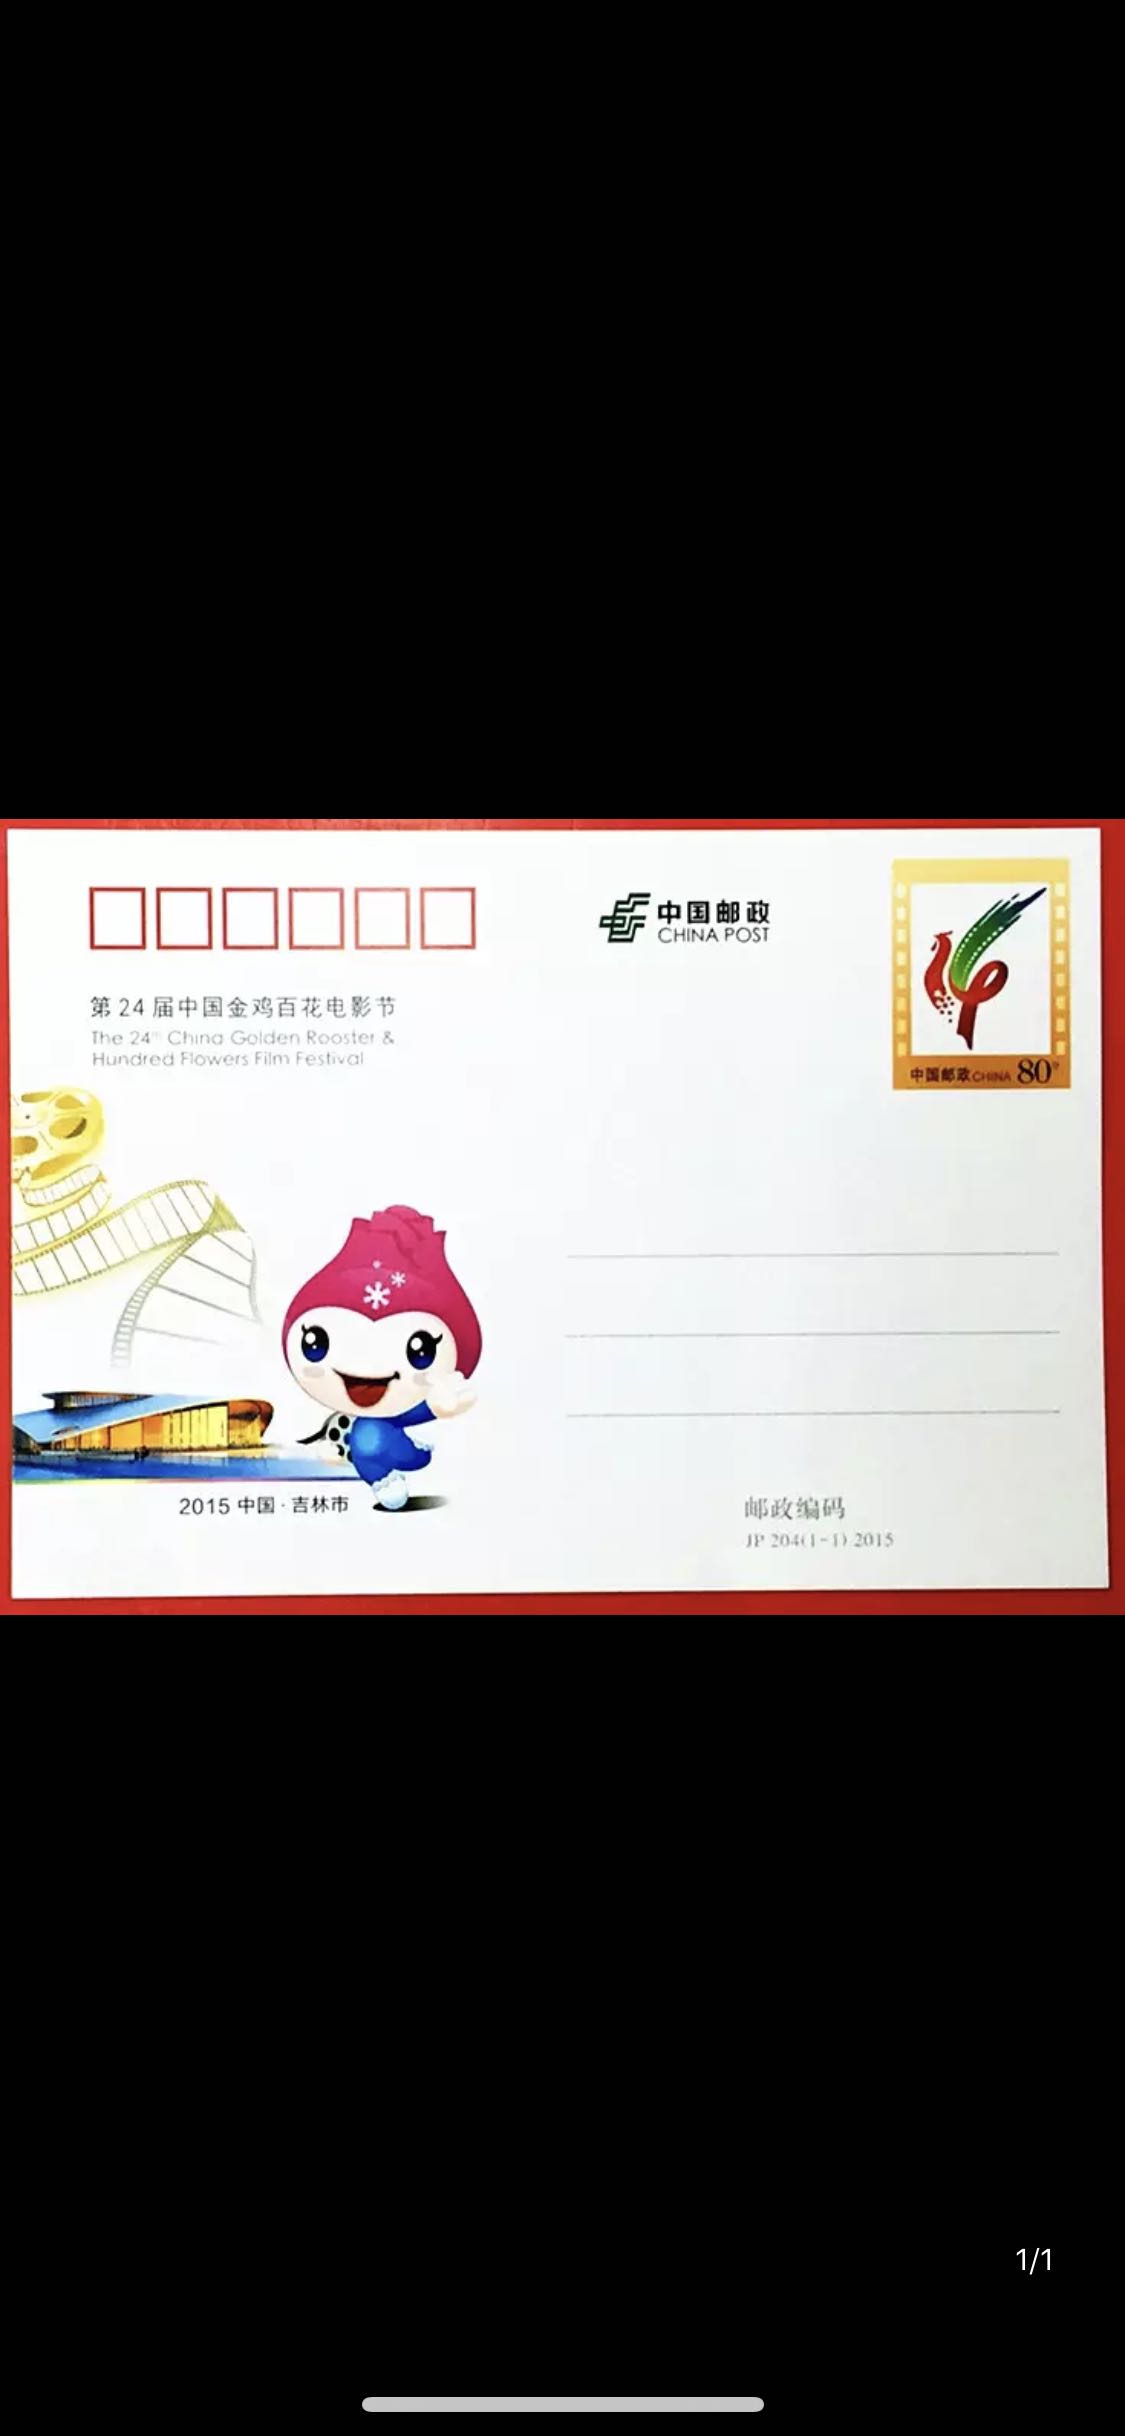 JP204 2015年  第24届中国金鸡百花电影节 纪念邮资明信片邮资片